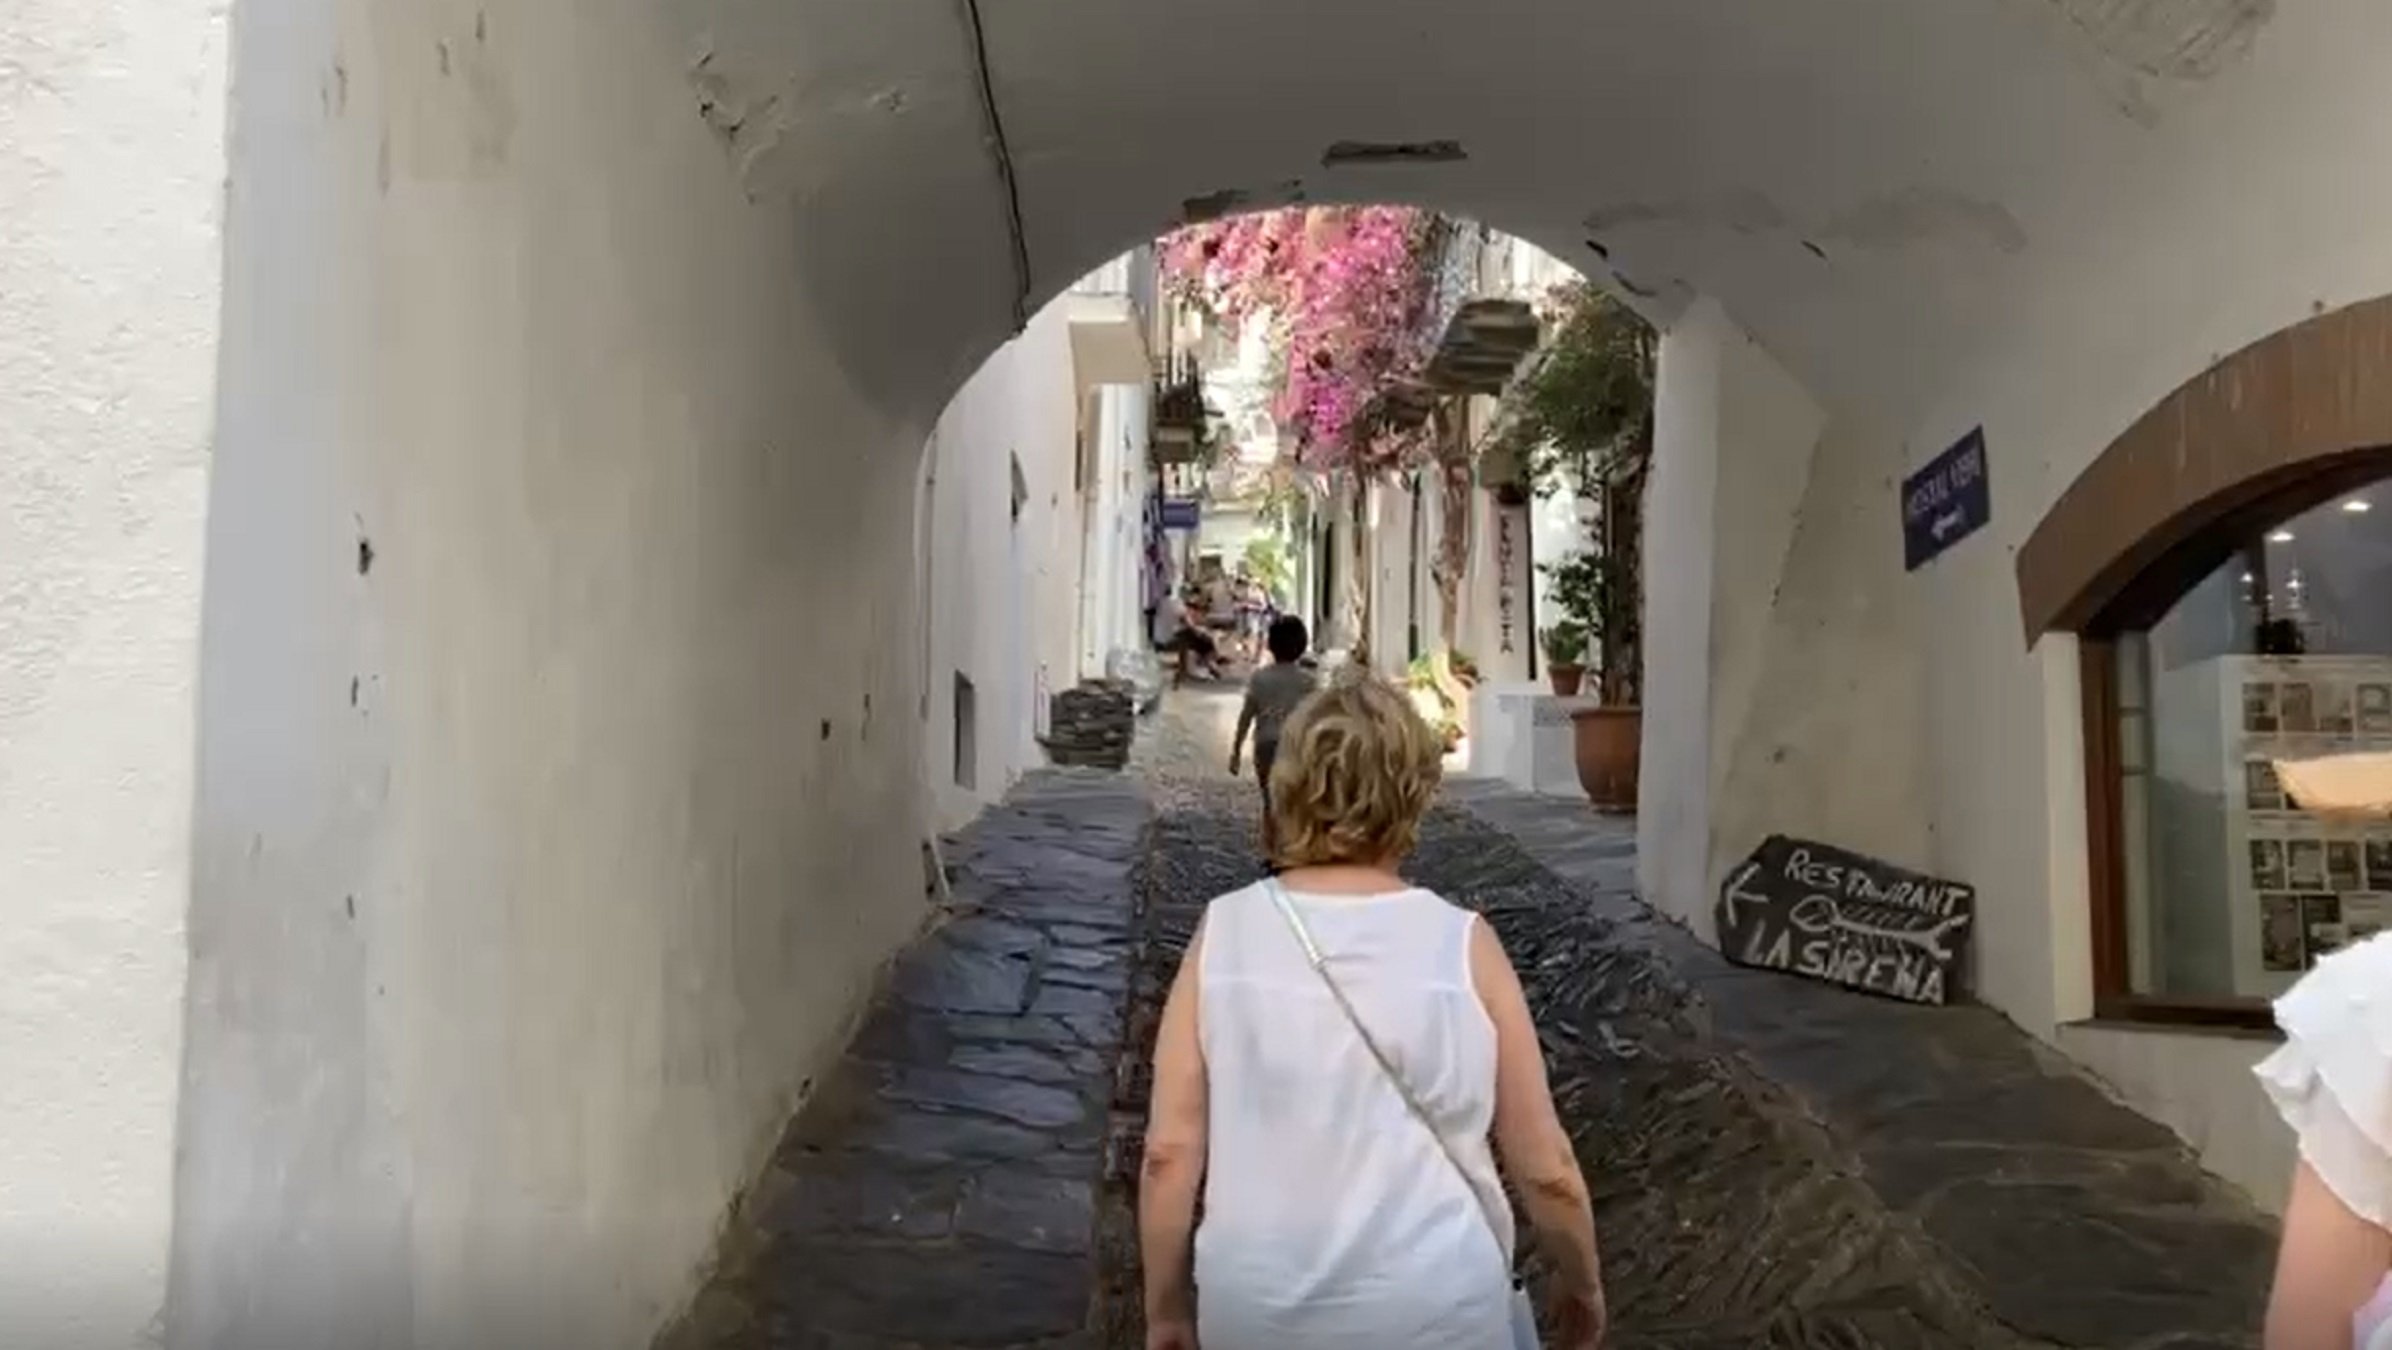 Rahola i la increïble història del carrer més famós i fotografiat de Cadaqués